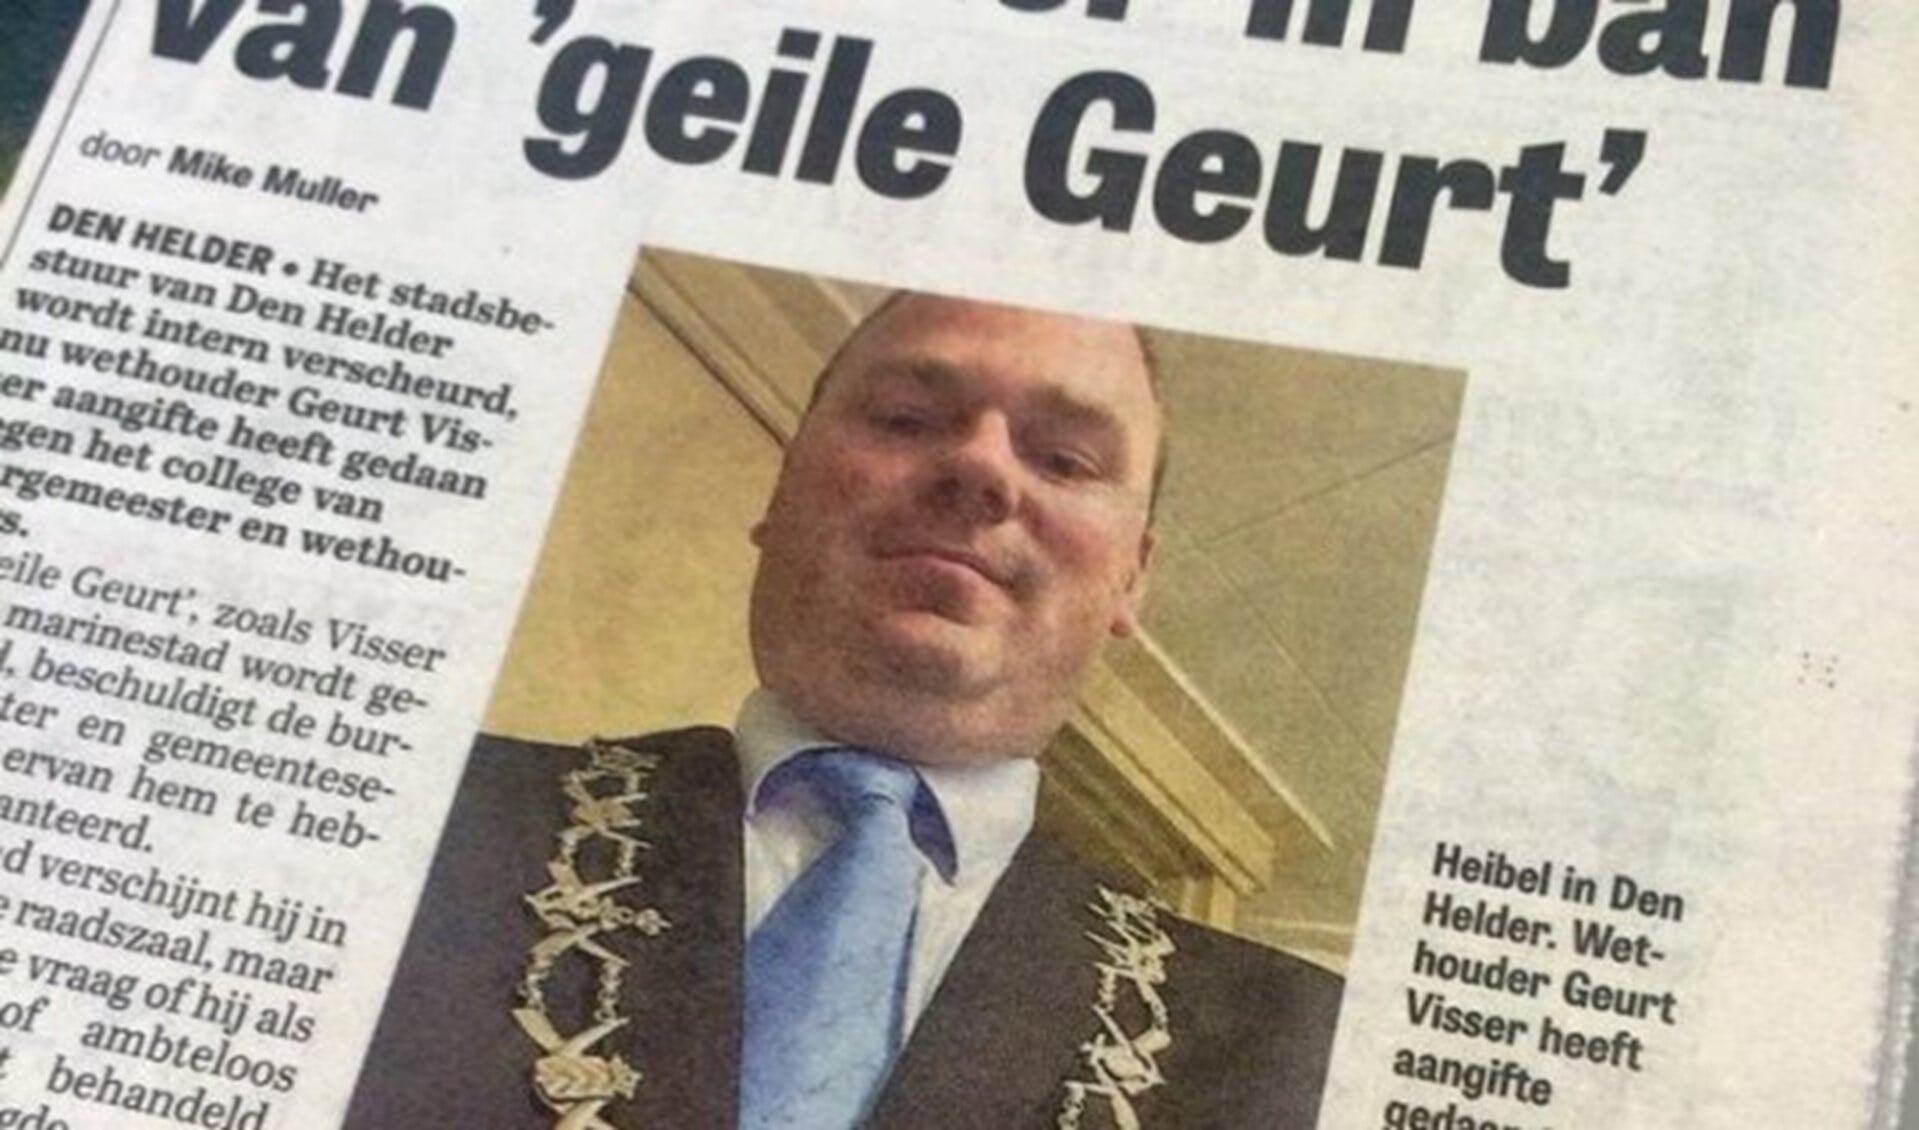 De Nootdorper werd door zijn vermeende escapades op het gemeentekantoor van Den Helder in de media al snel 'Geile Geurt' genoemd.